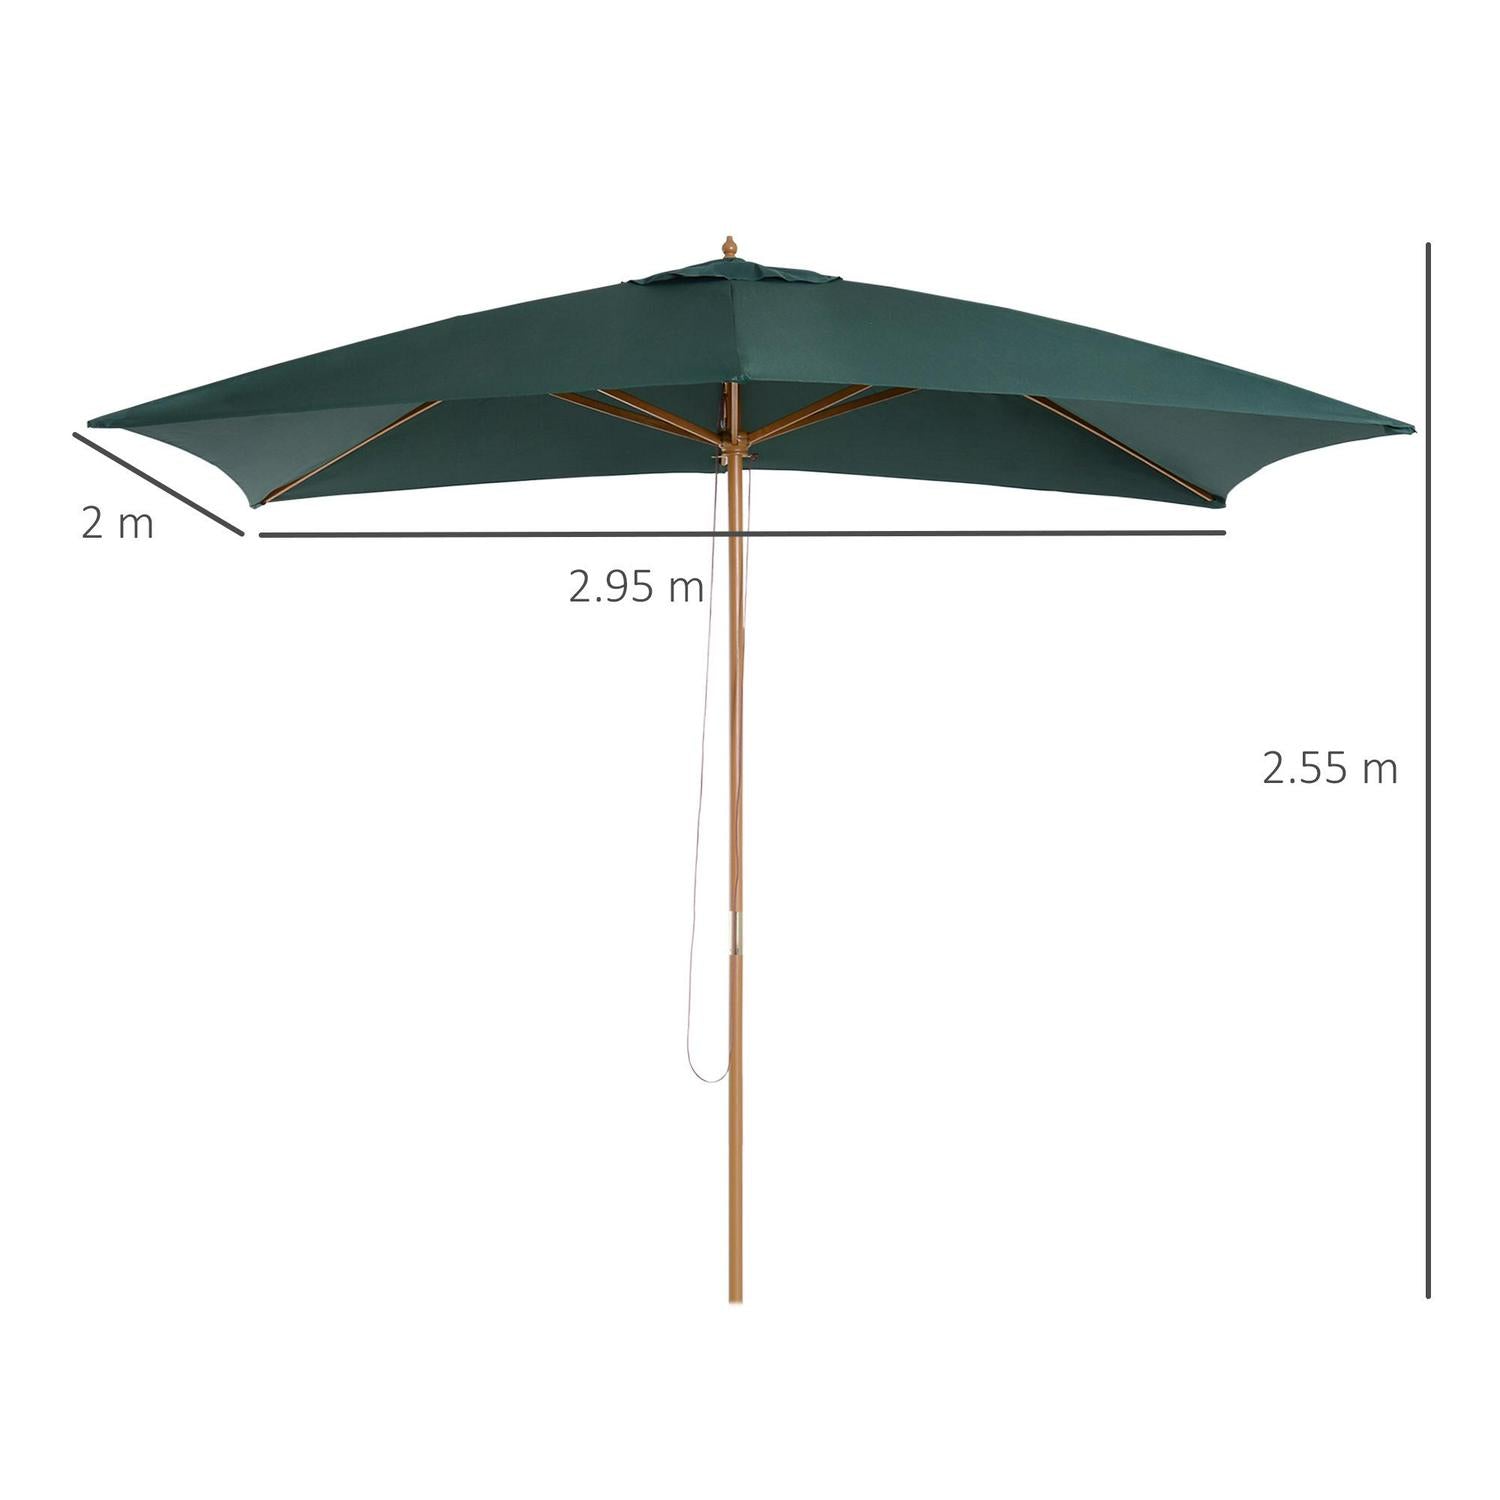 295L X 200W 255Hcm Wooden Umbrella Parasol-Dark Green